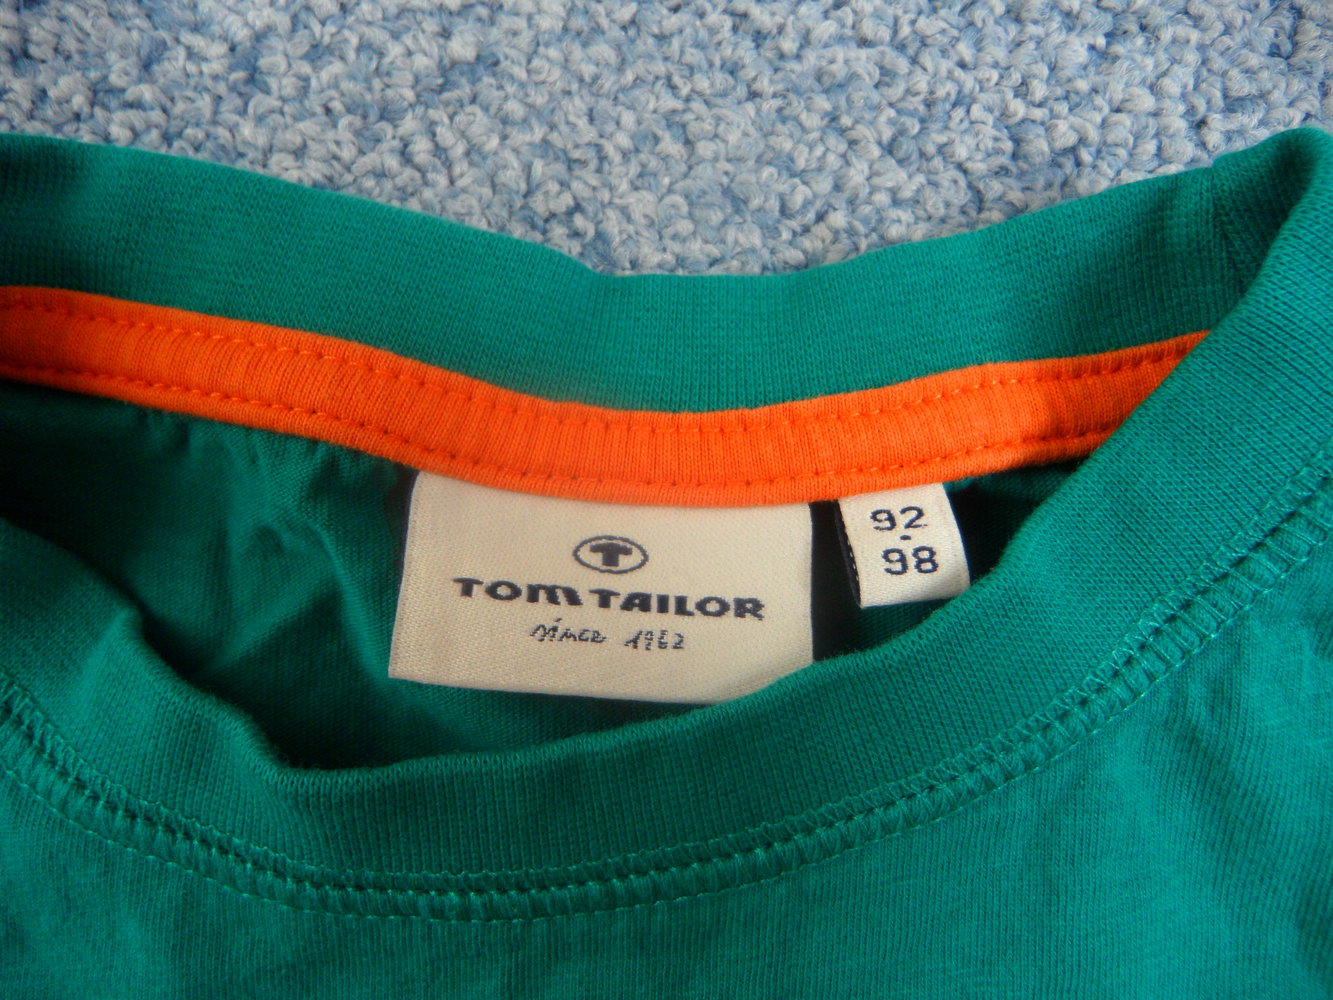 Tom Tailor T-Shirt Schokolade 92/98